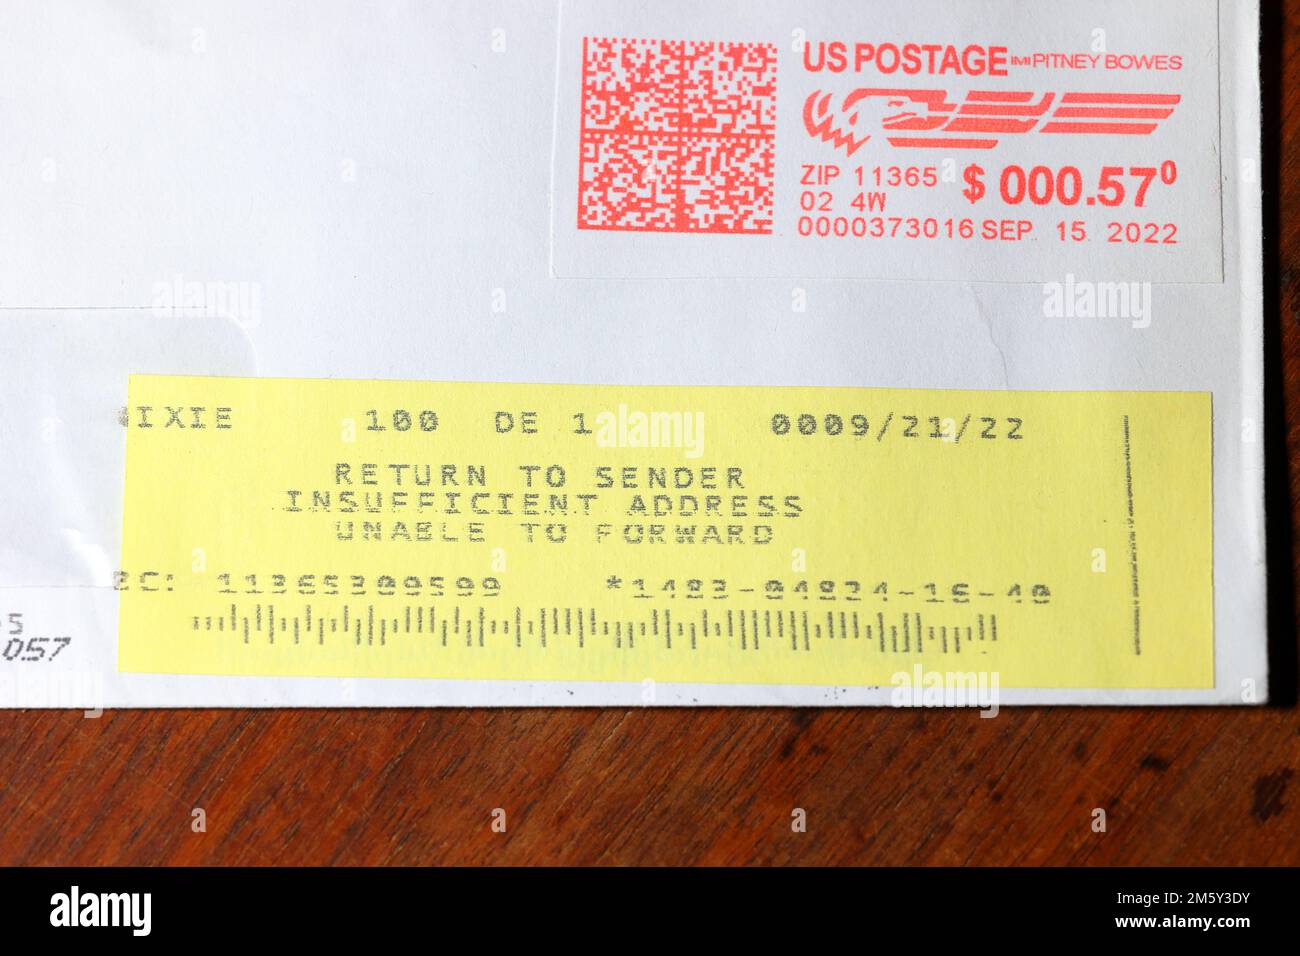 A Rücksendung an Absender: Unzureichende Adresse für die Weiterleitung eines Etiketts auf einem Brief, der über den US Postdienst gesendet wurde. Stockfoto